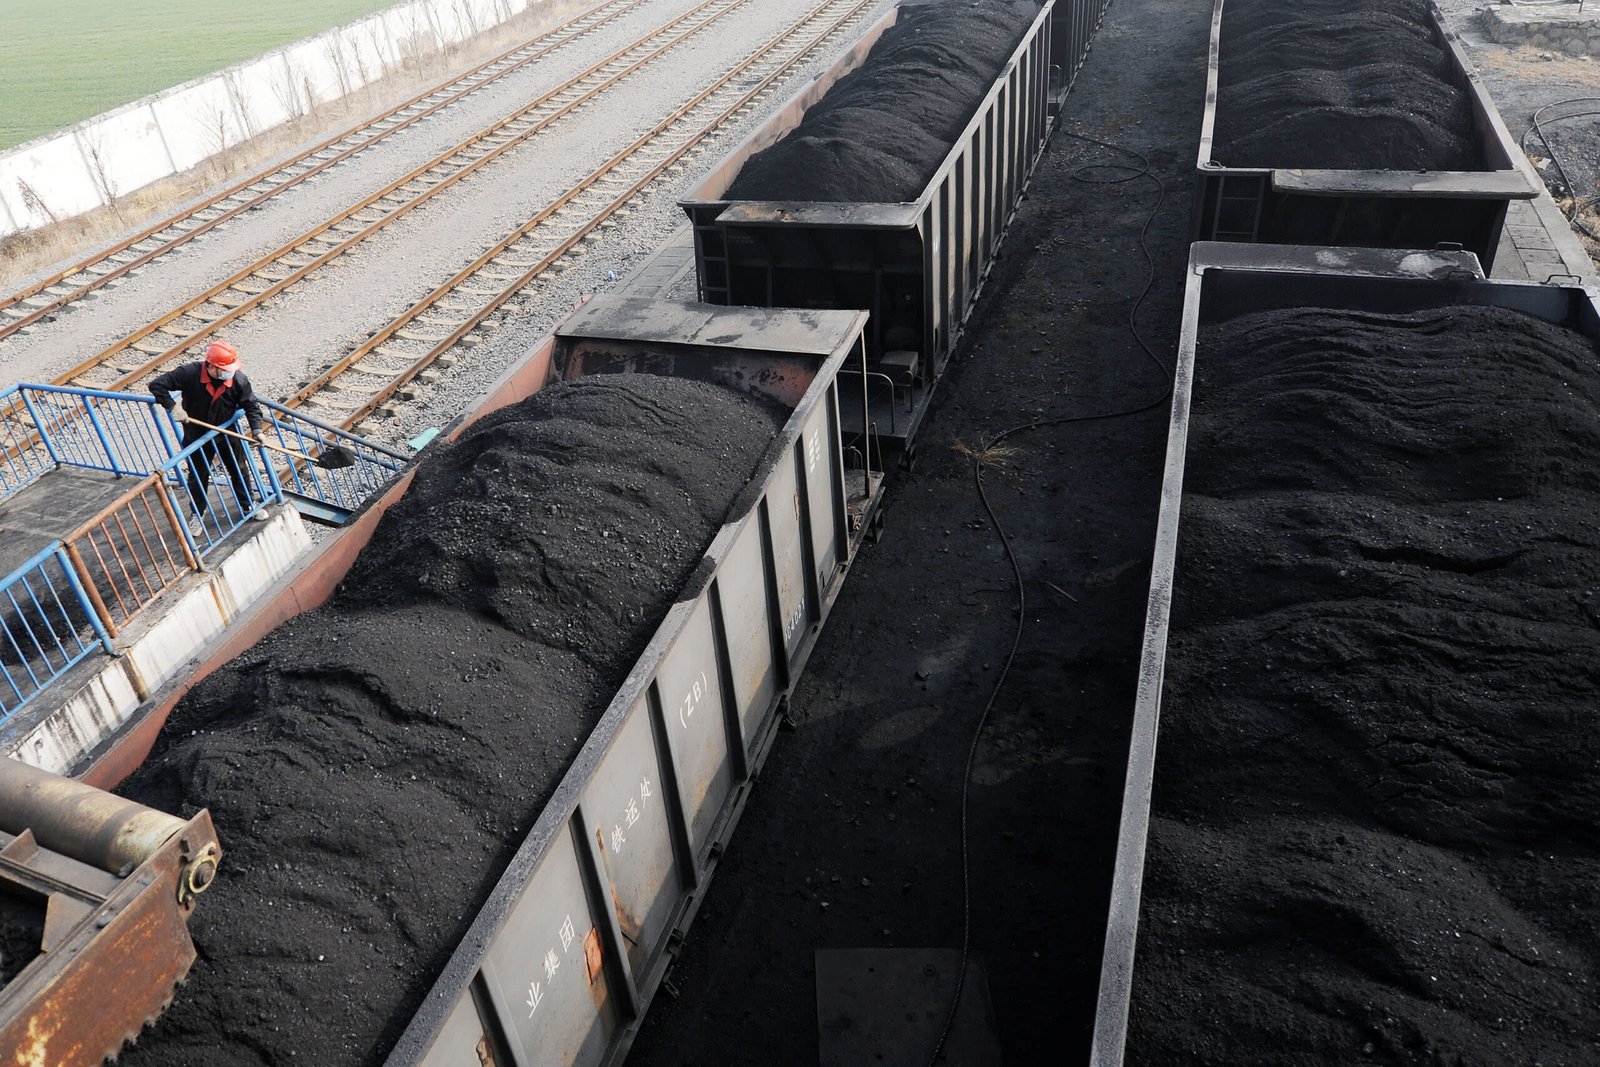 Global Coal Demand Faces Historic Decline As Renewable Energy Surges